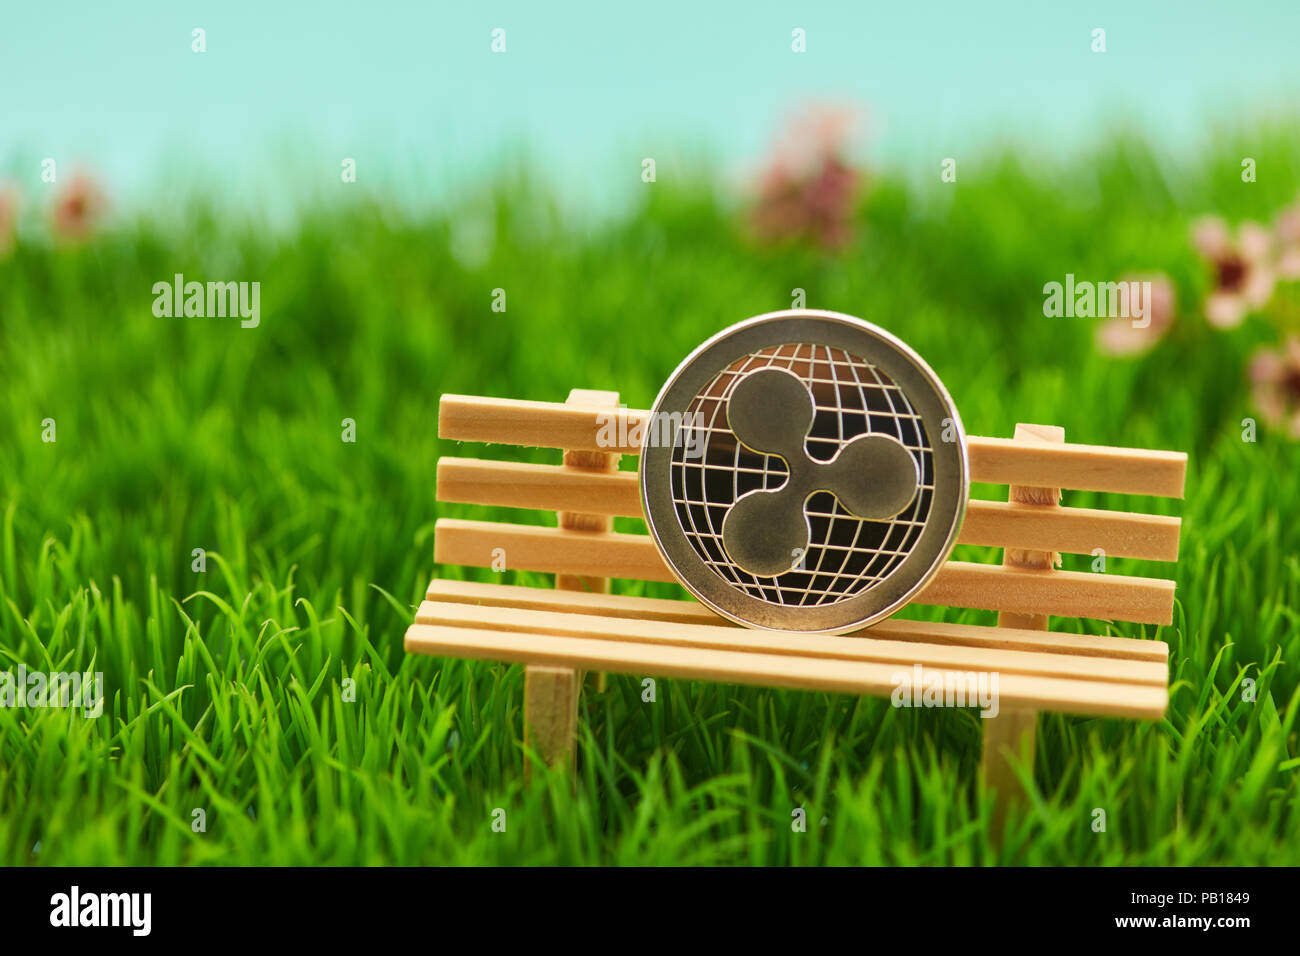 Ripple moneta sul banco in erba di un giardino come un capitolo impianto. Concetto Foto Stock